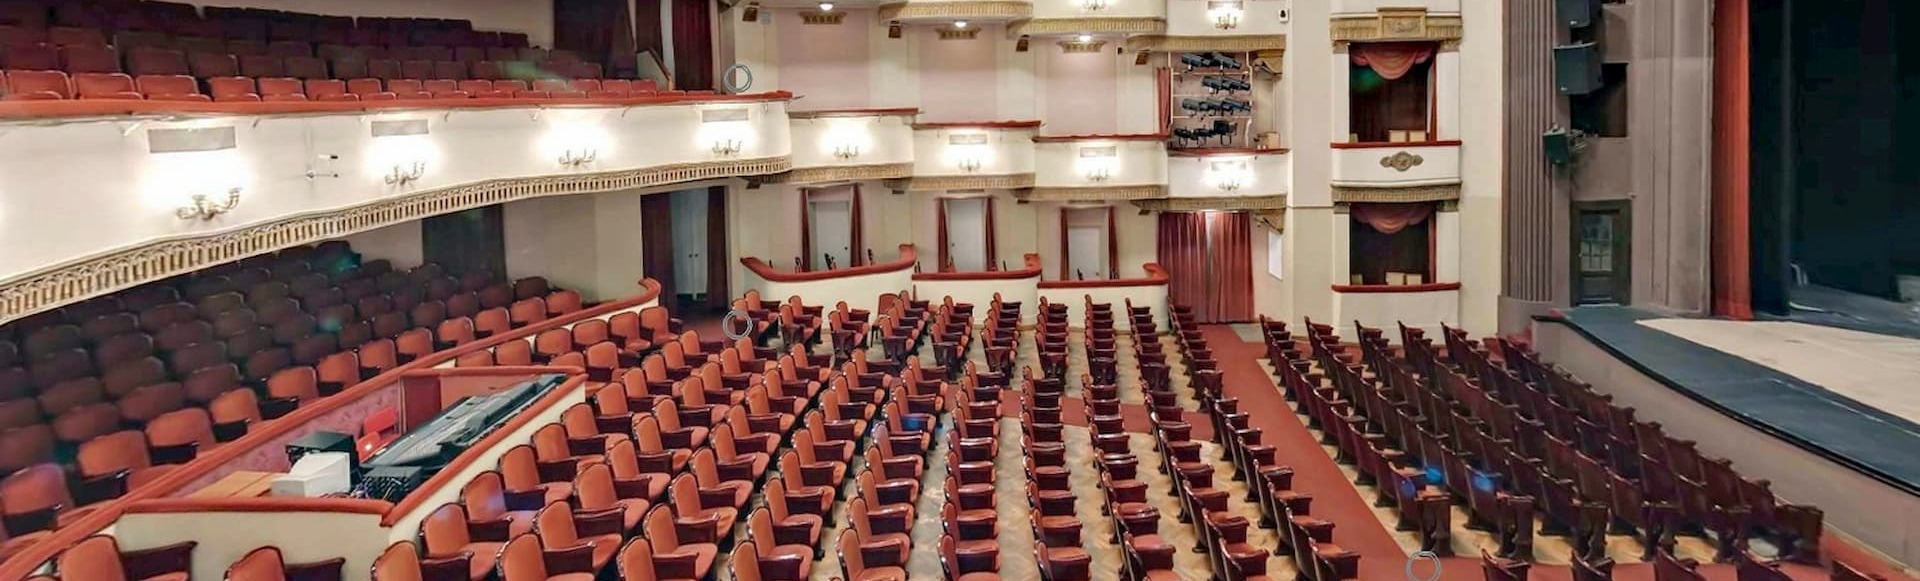 вахтангова театр зал